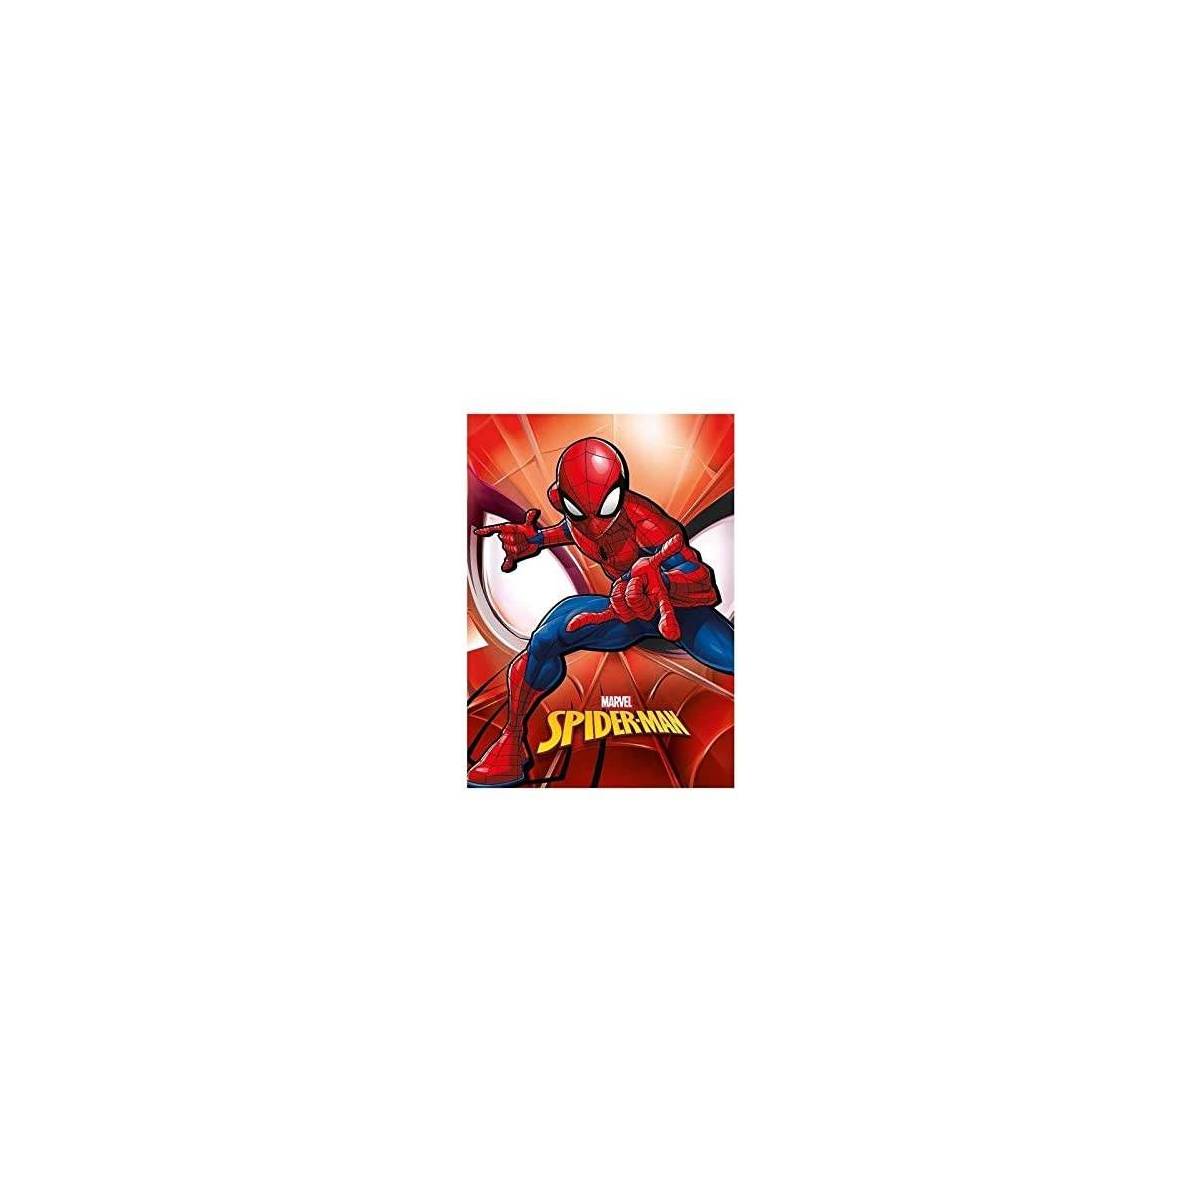 Plaid Couverture Polaire Marvel Spiderman 140 x 100 cm